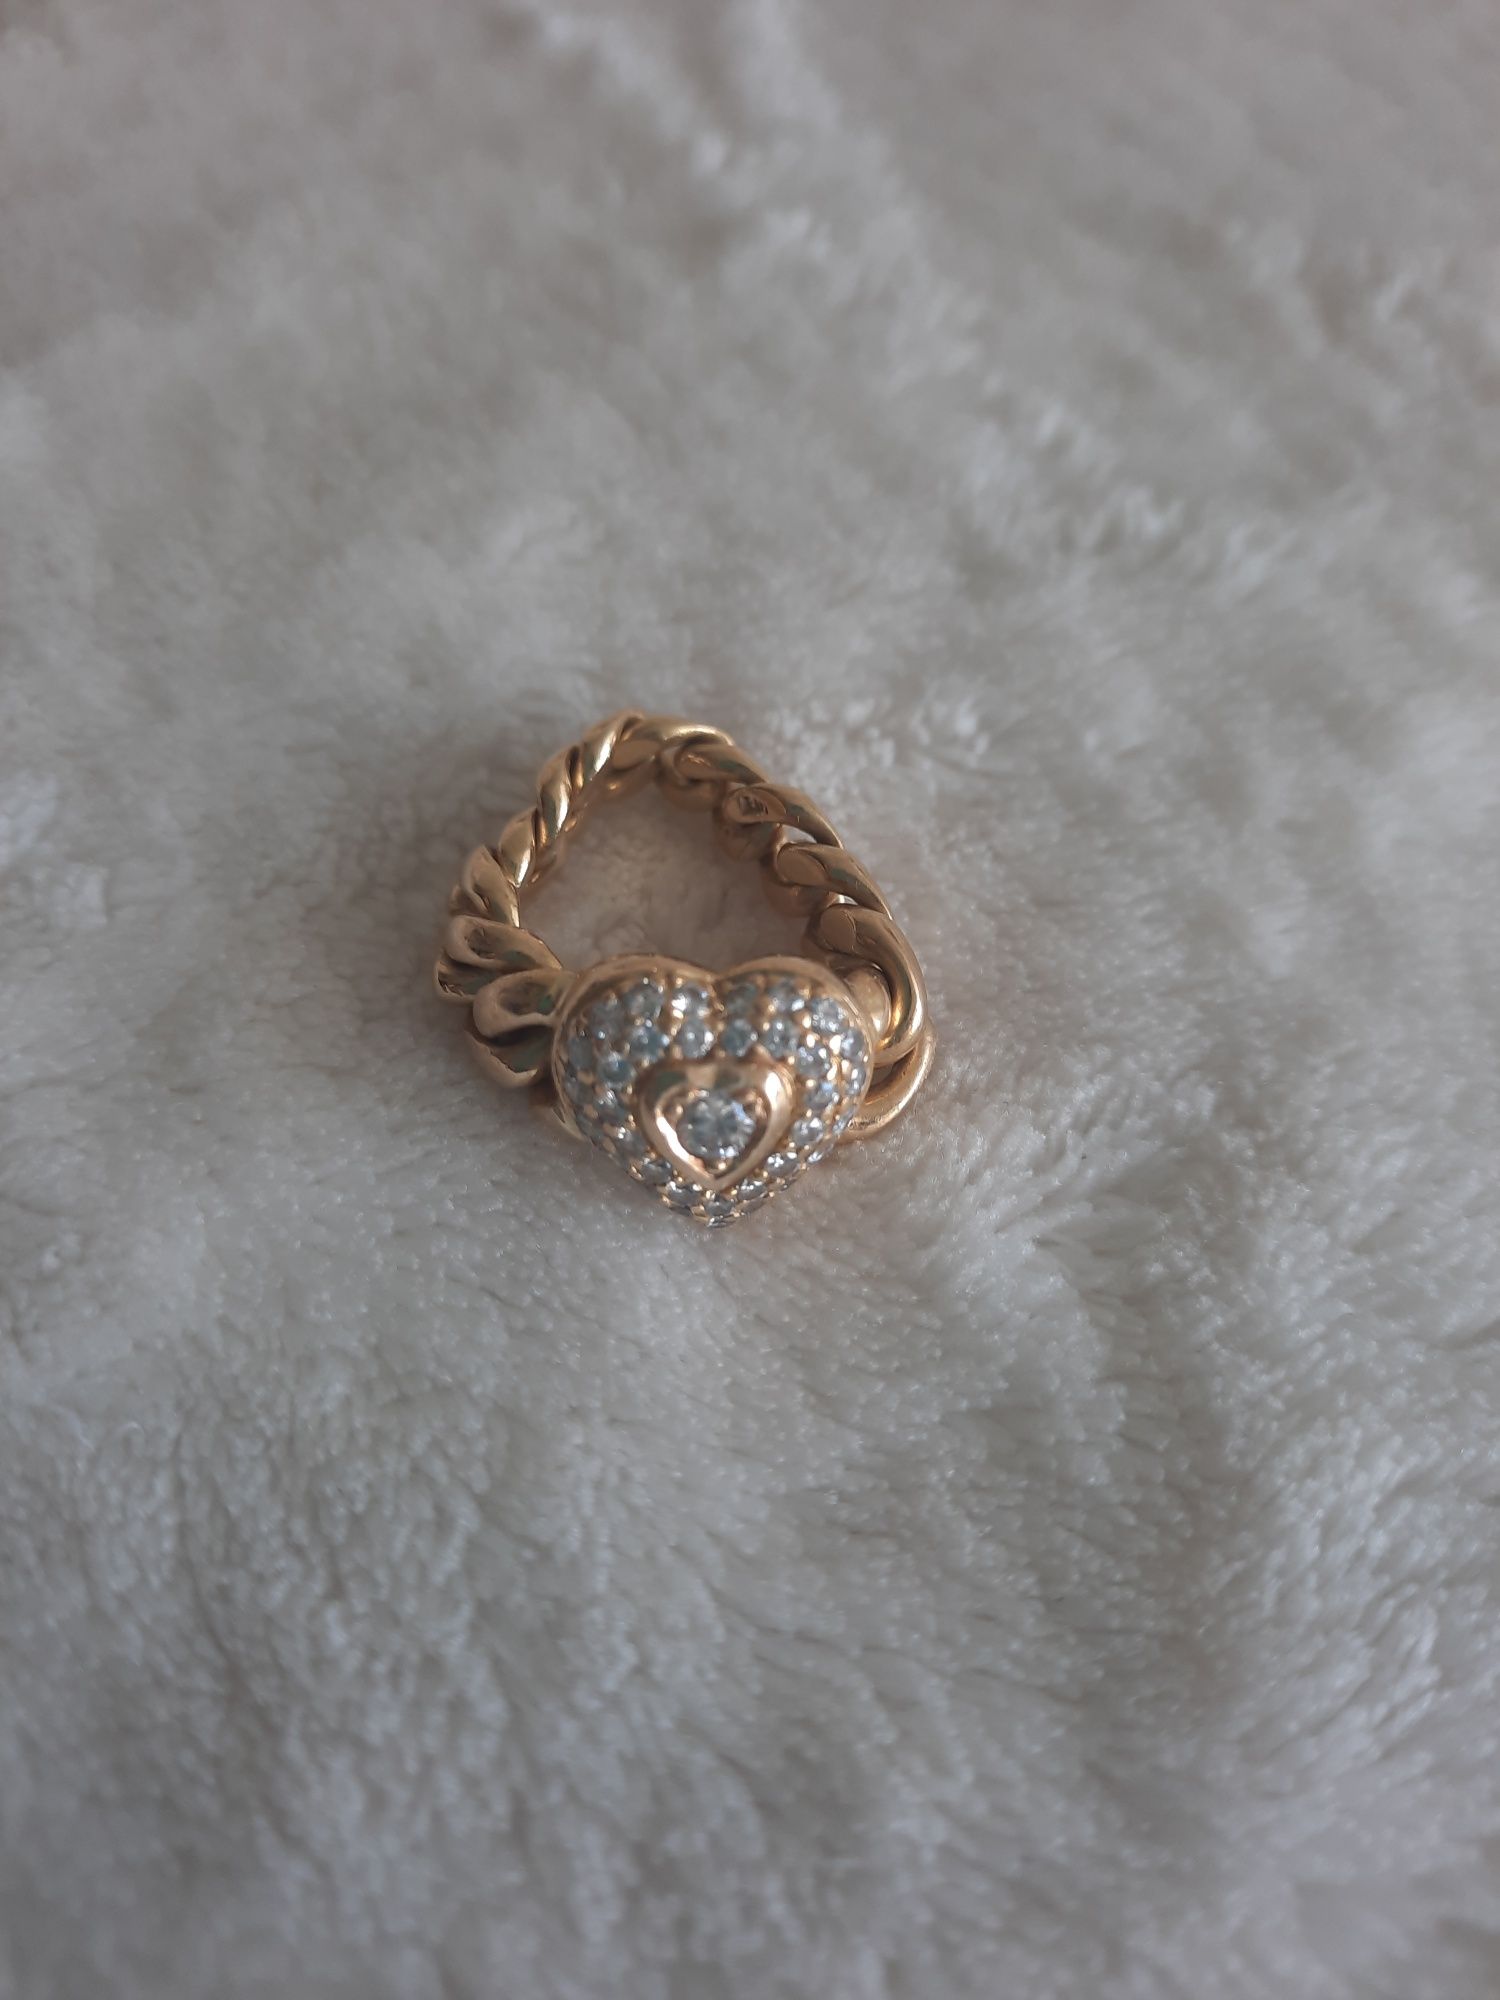 Złoty pierścionek w kształcie serca